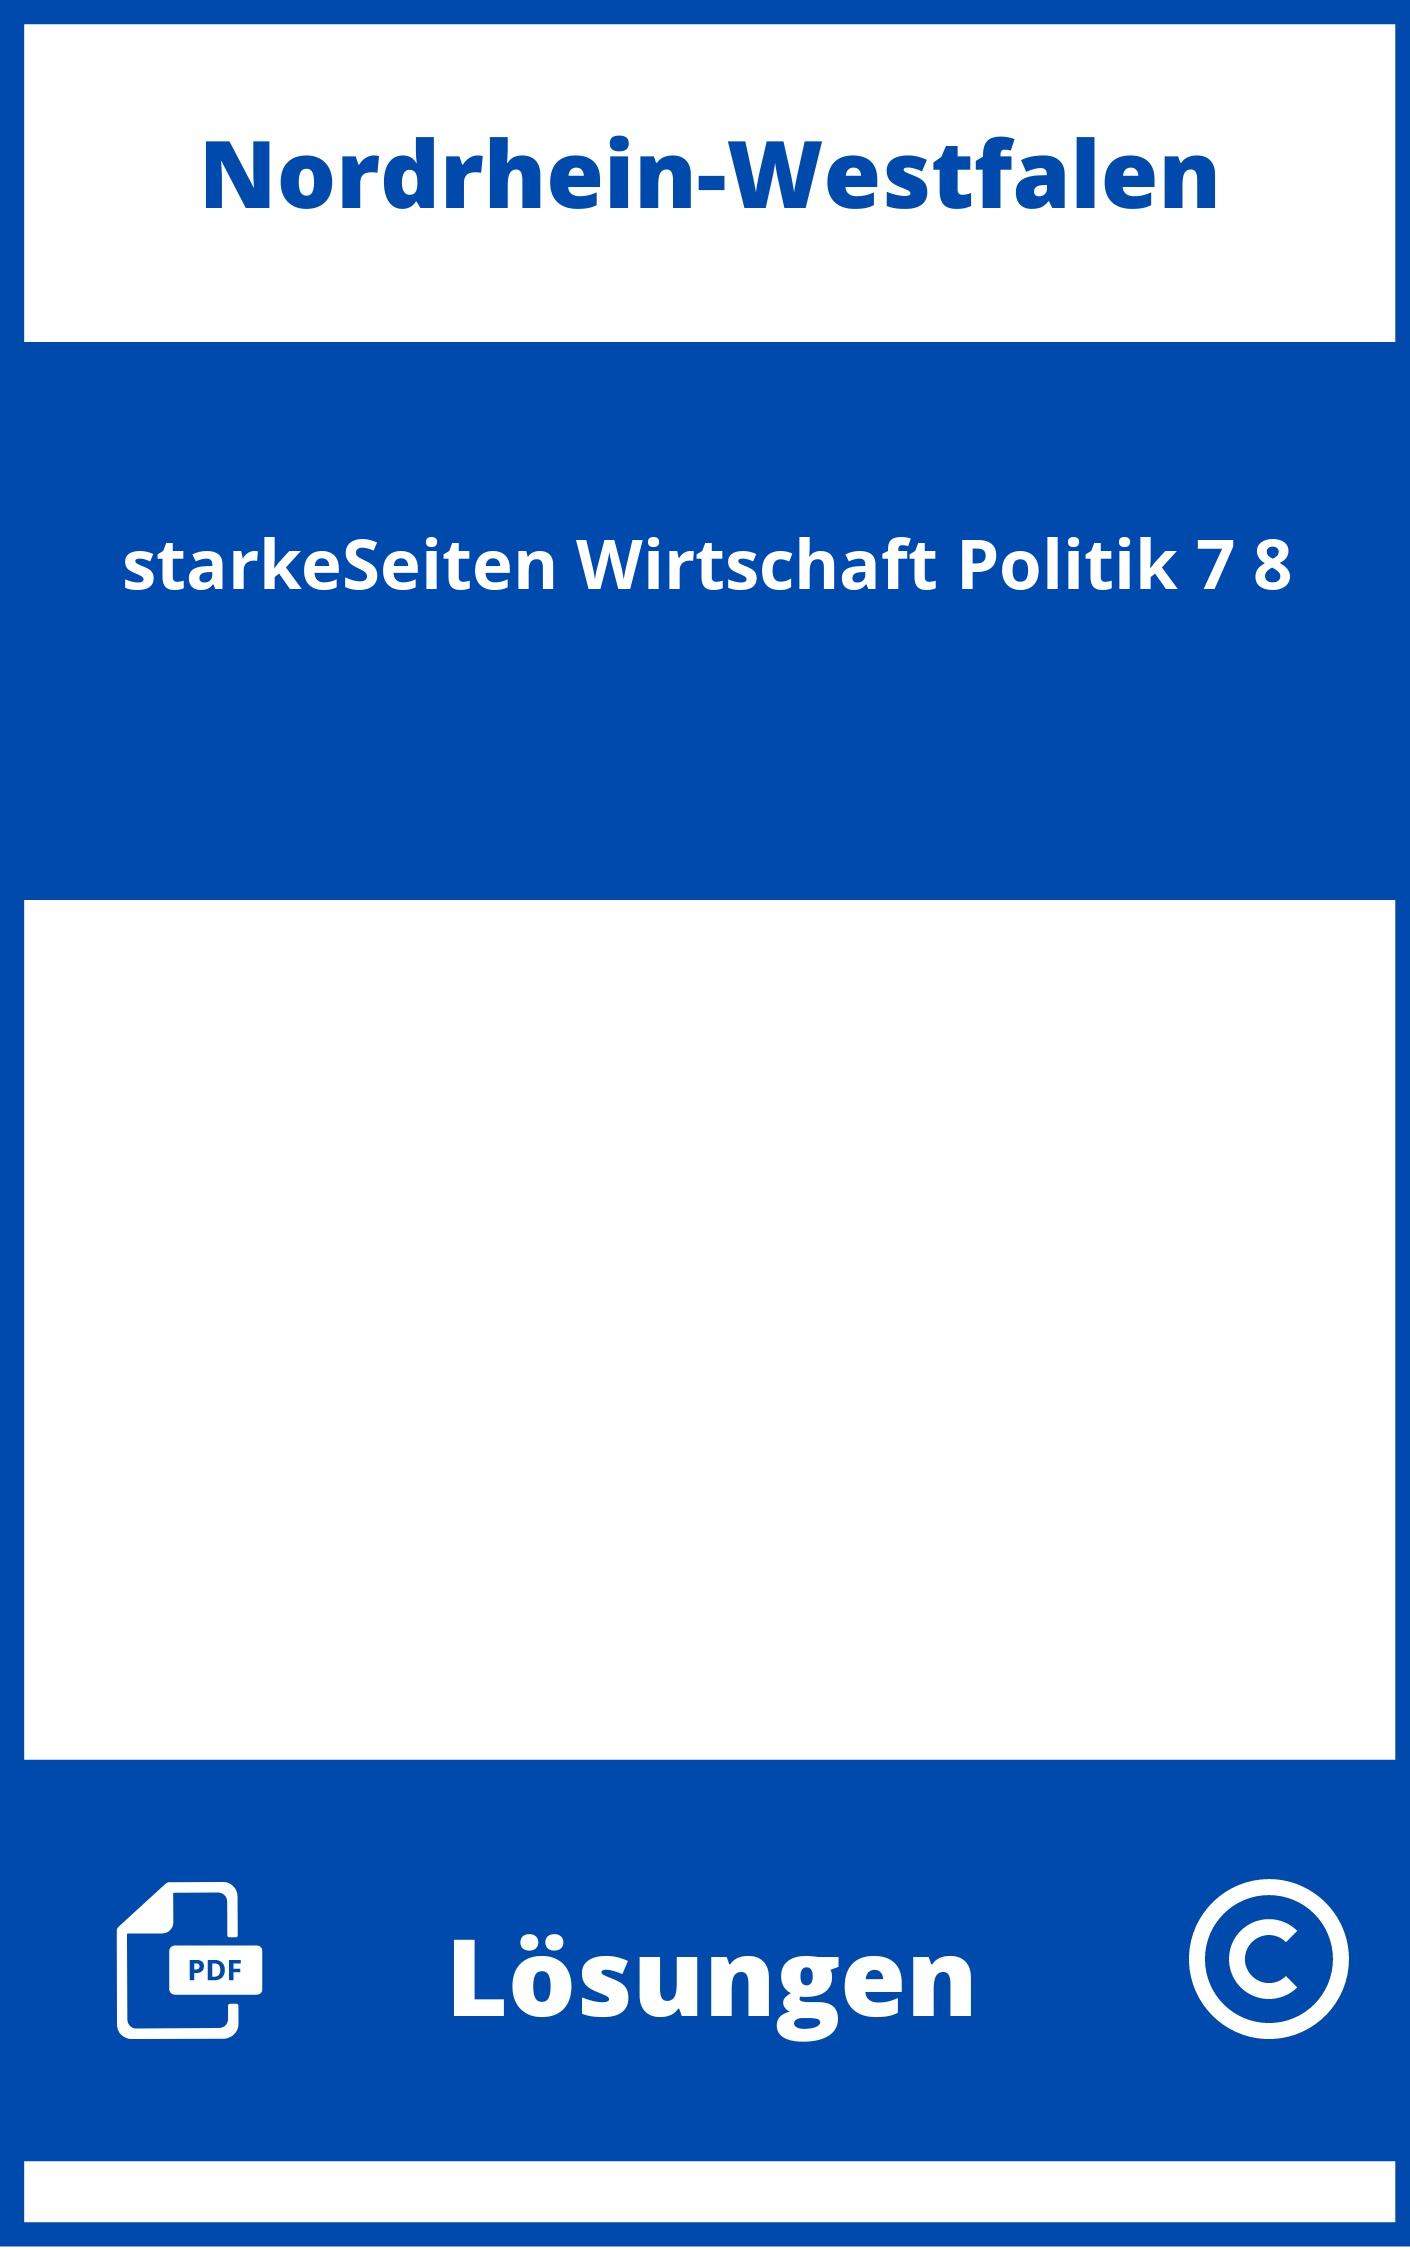 starkeSeiten Wirtschaft/Politik 7/8 Lösungen NRW PDF